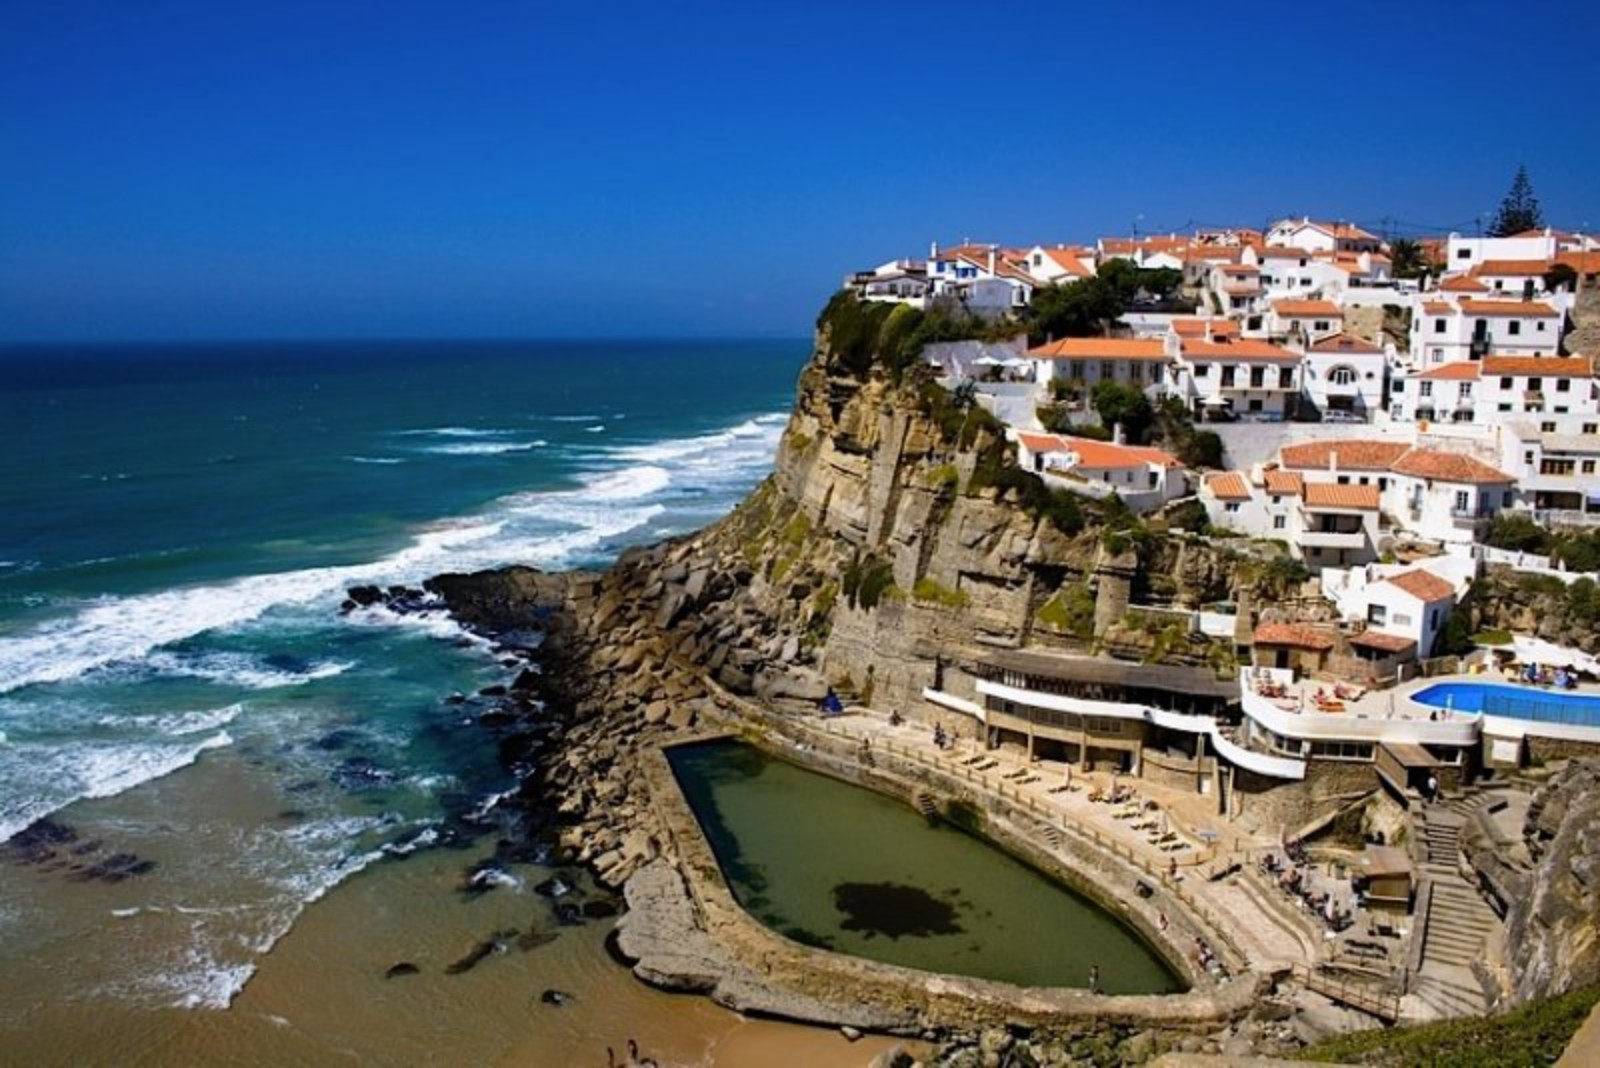 Португалия. Лореш Португалия. Лиссабонское побережье, Португалия. Аталайя Португалия. Порто город в Португалии пляжи.